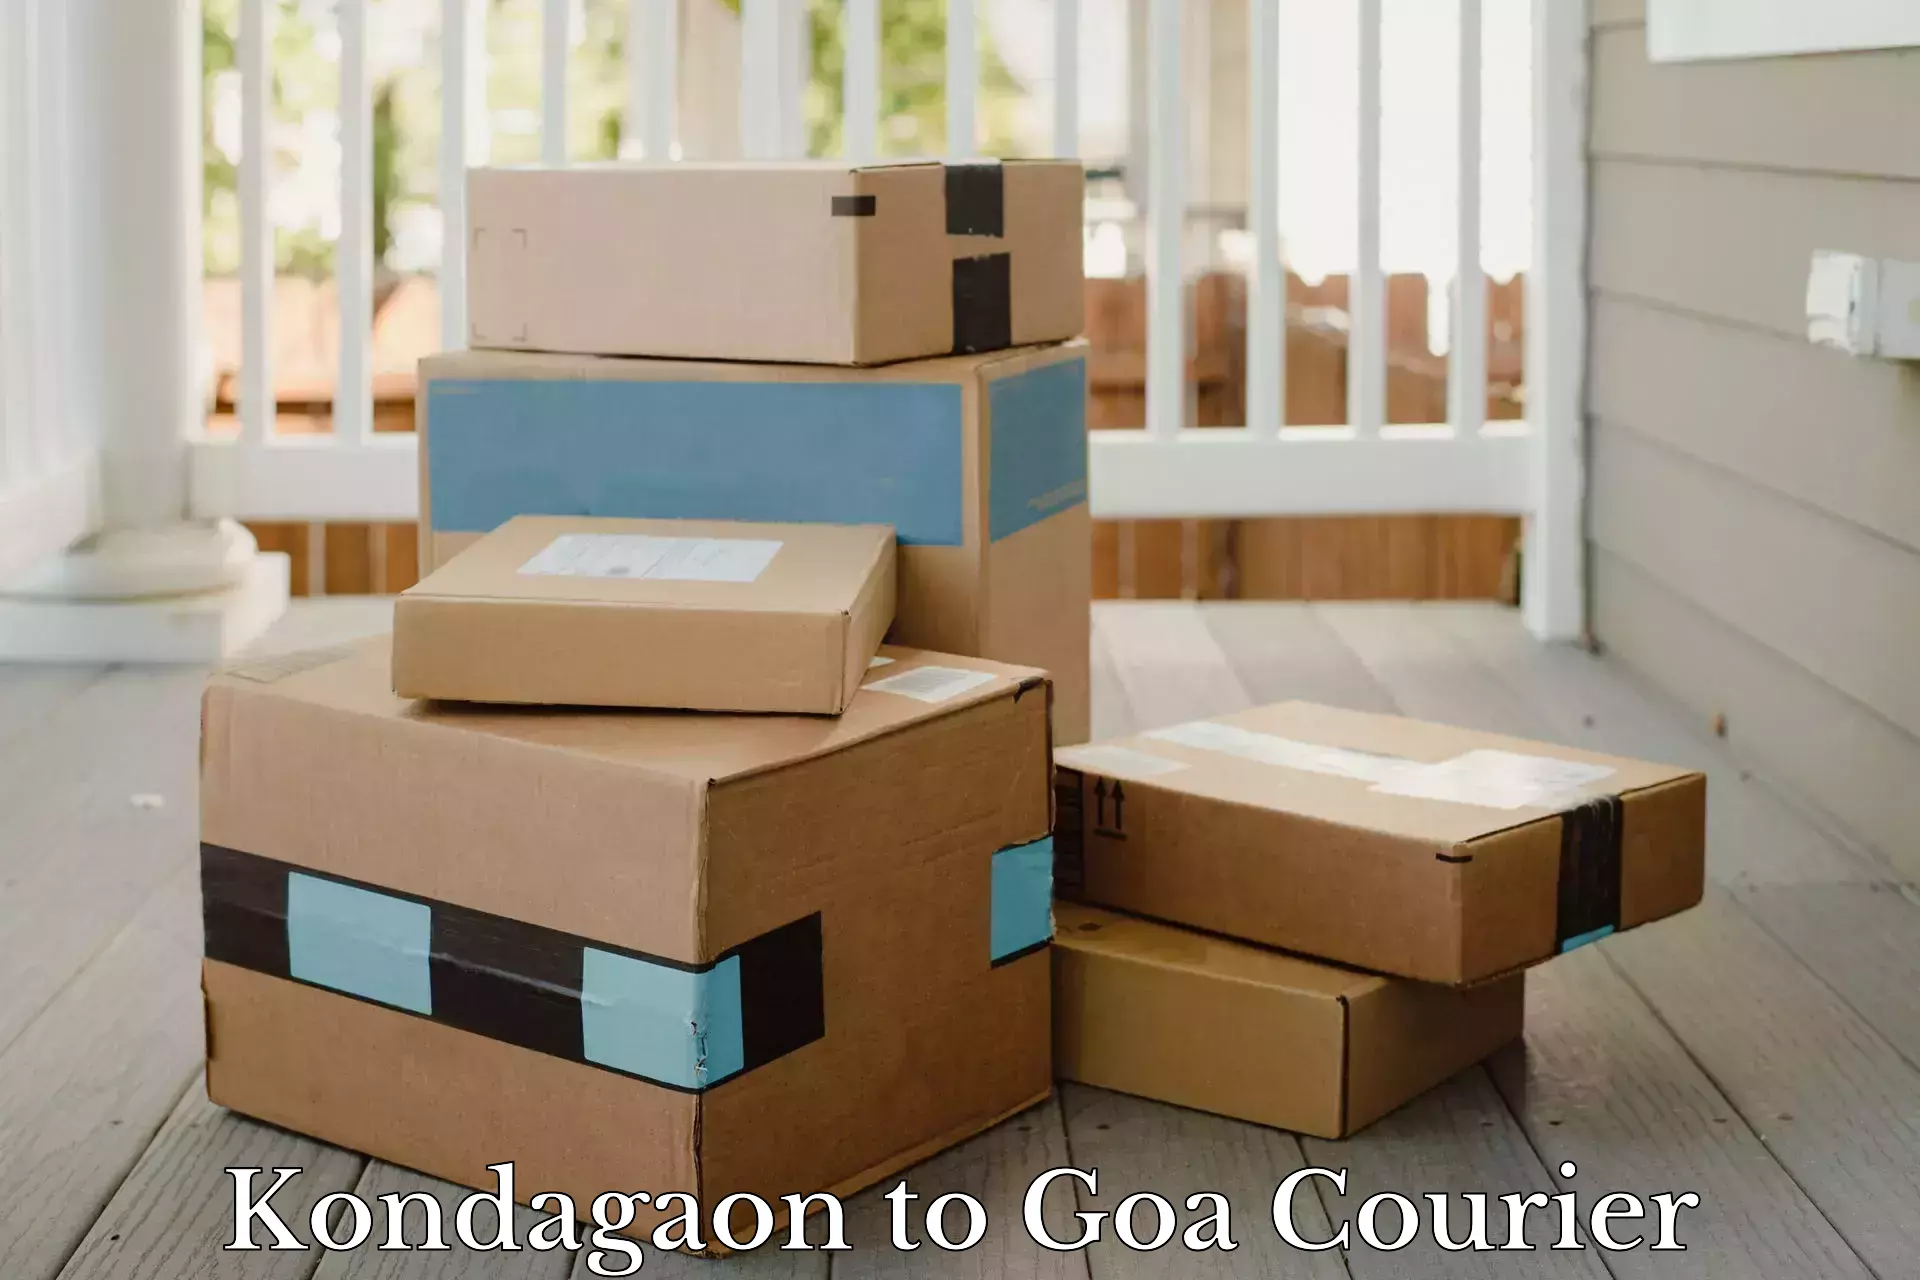 Specialized shipment handling Kondagaon to Goa University